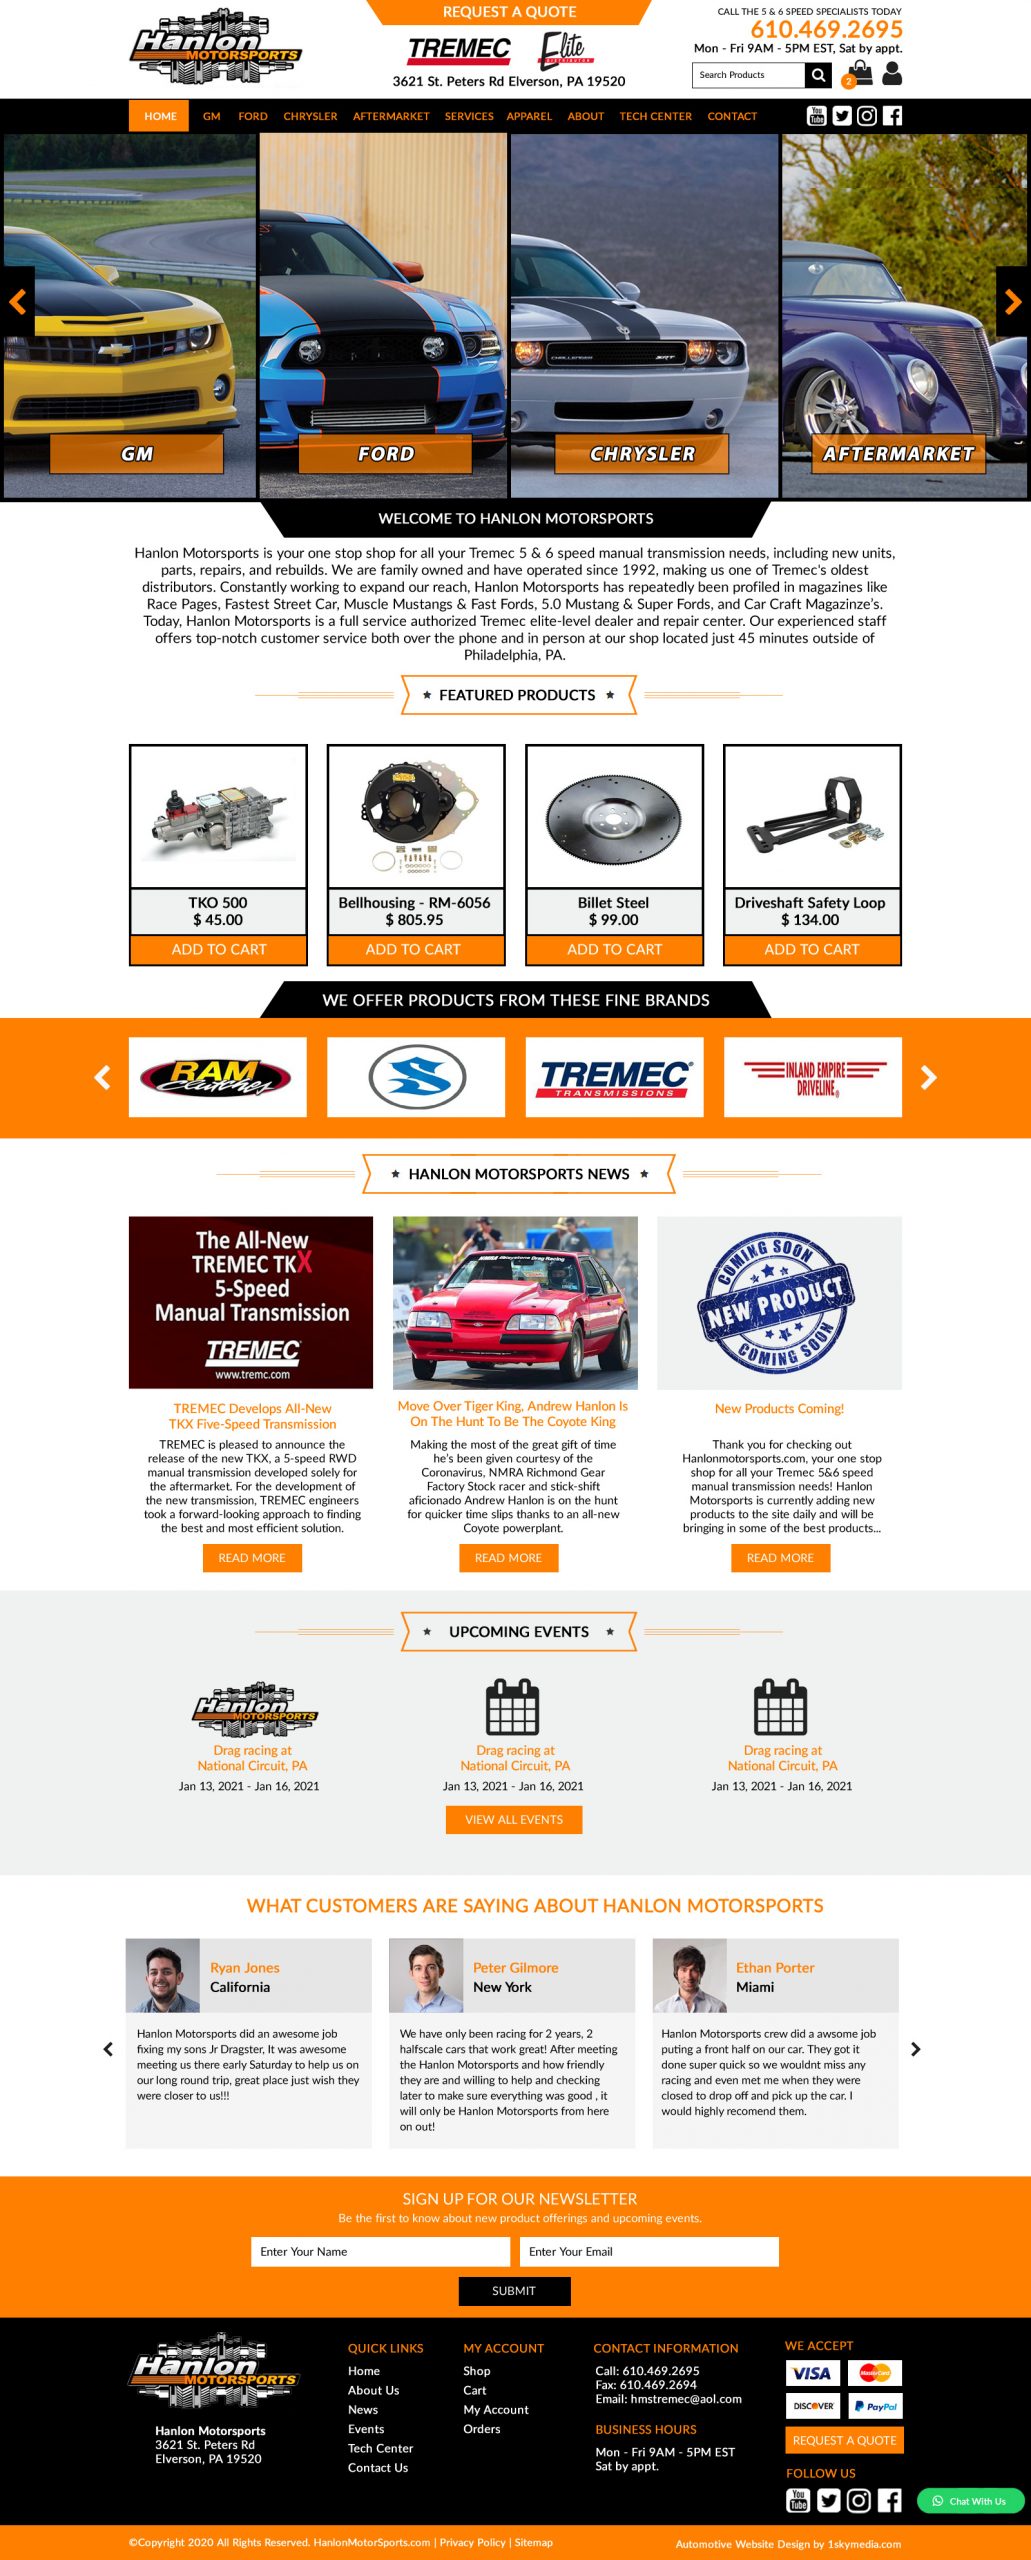 Manual Transmision Sales Website Design